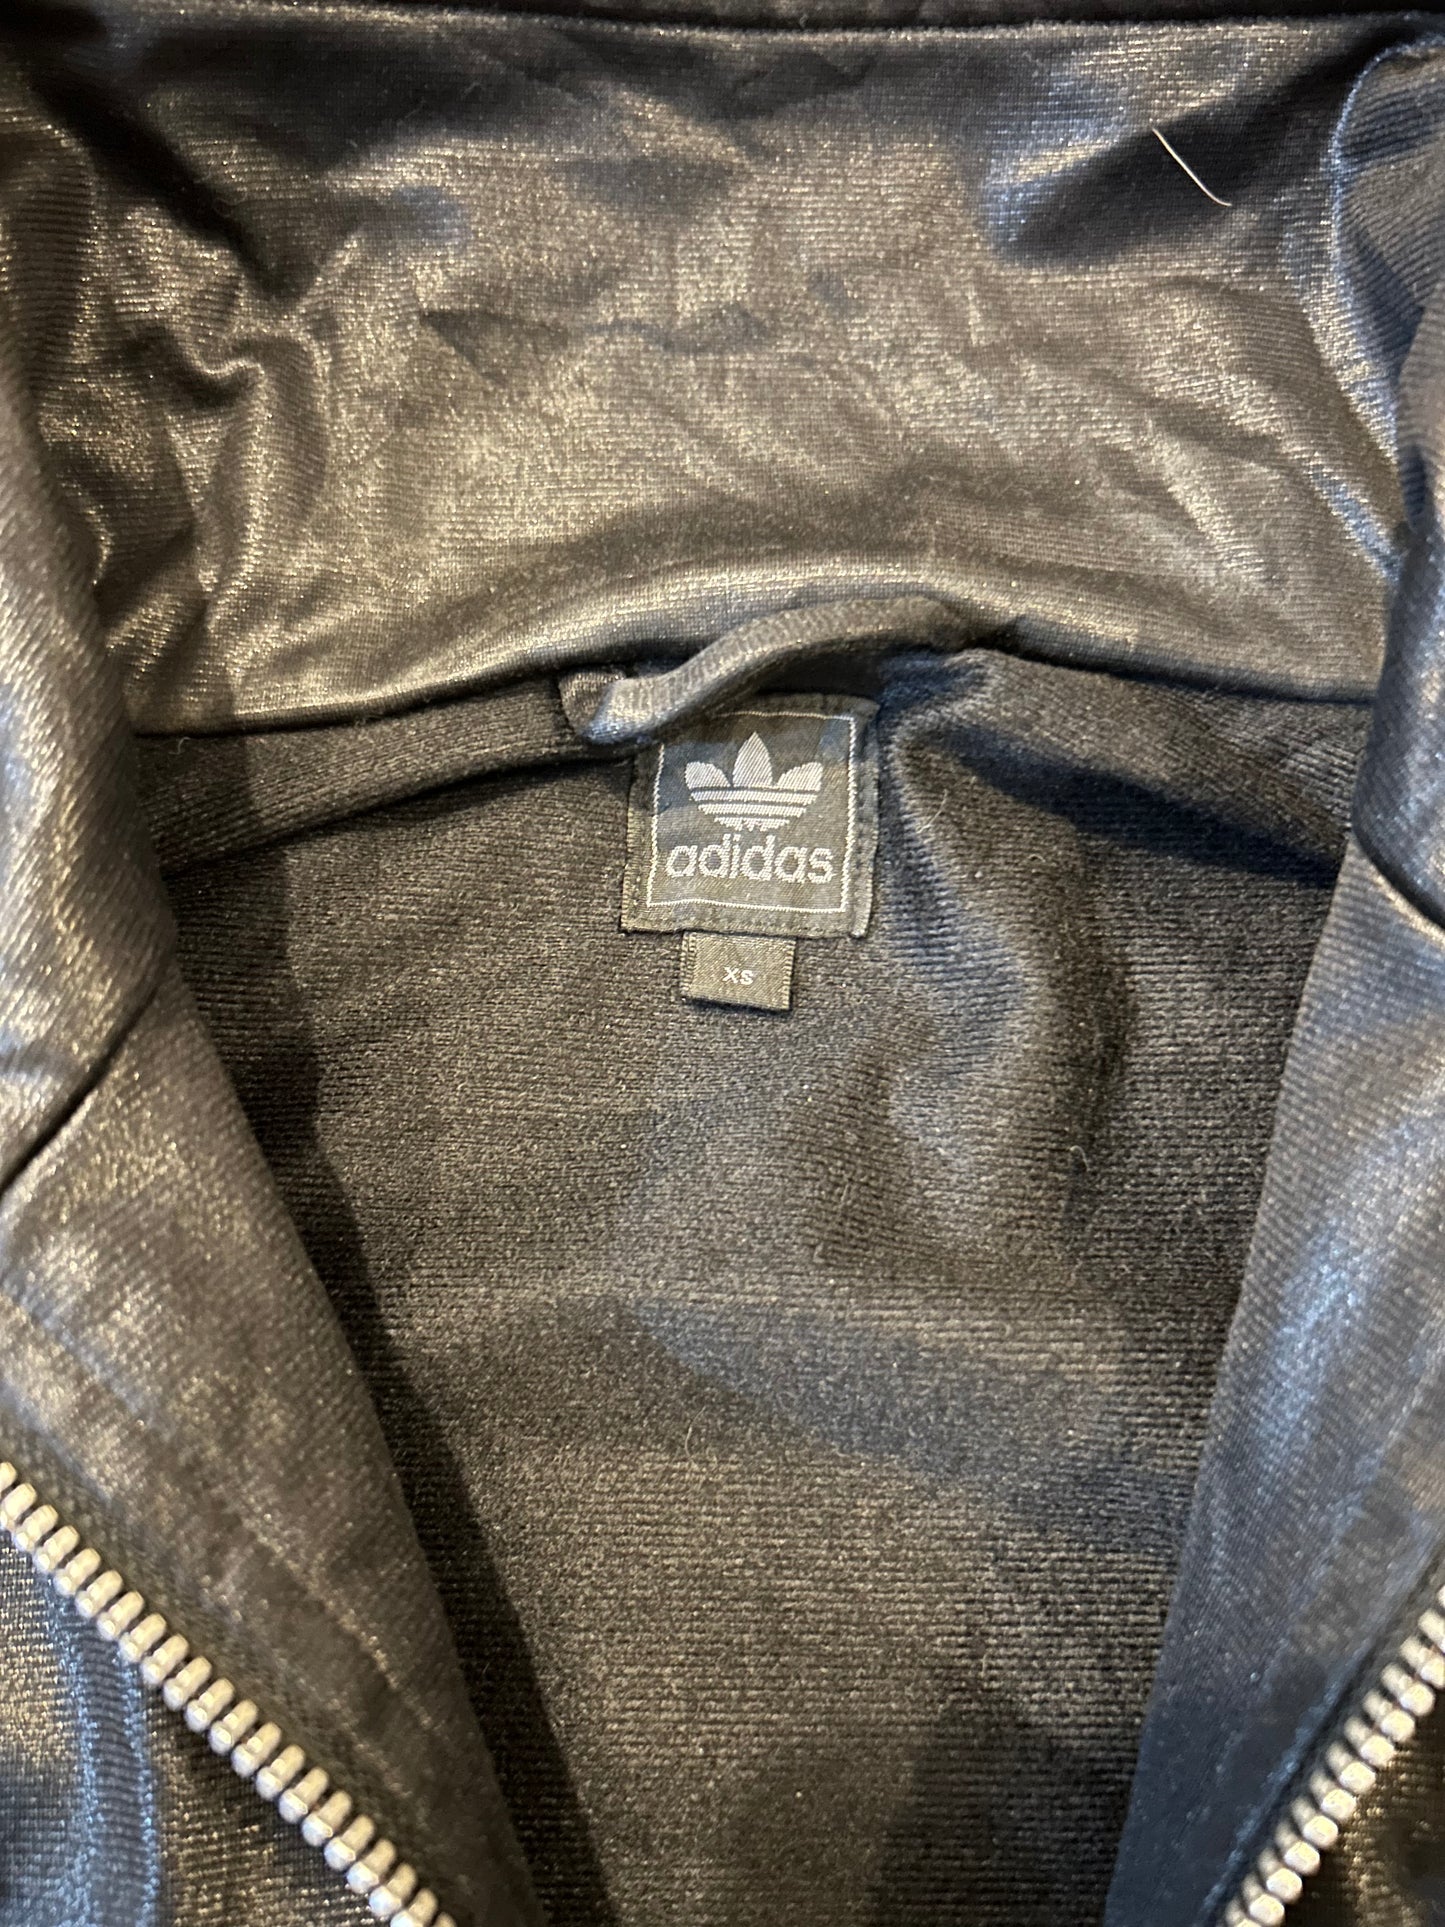 Vintage Adidas Chile '62 Jacket